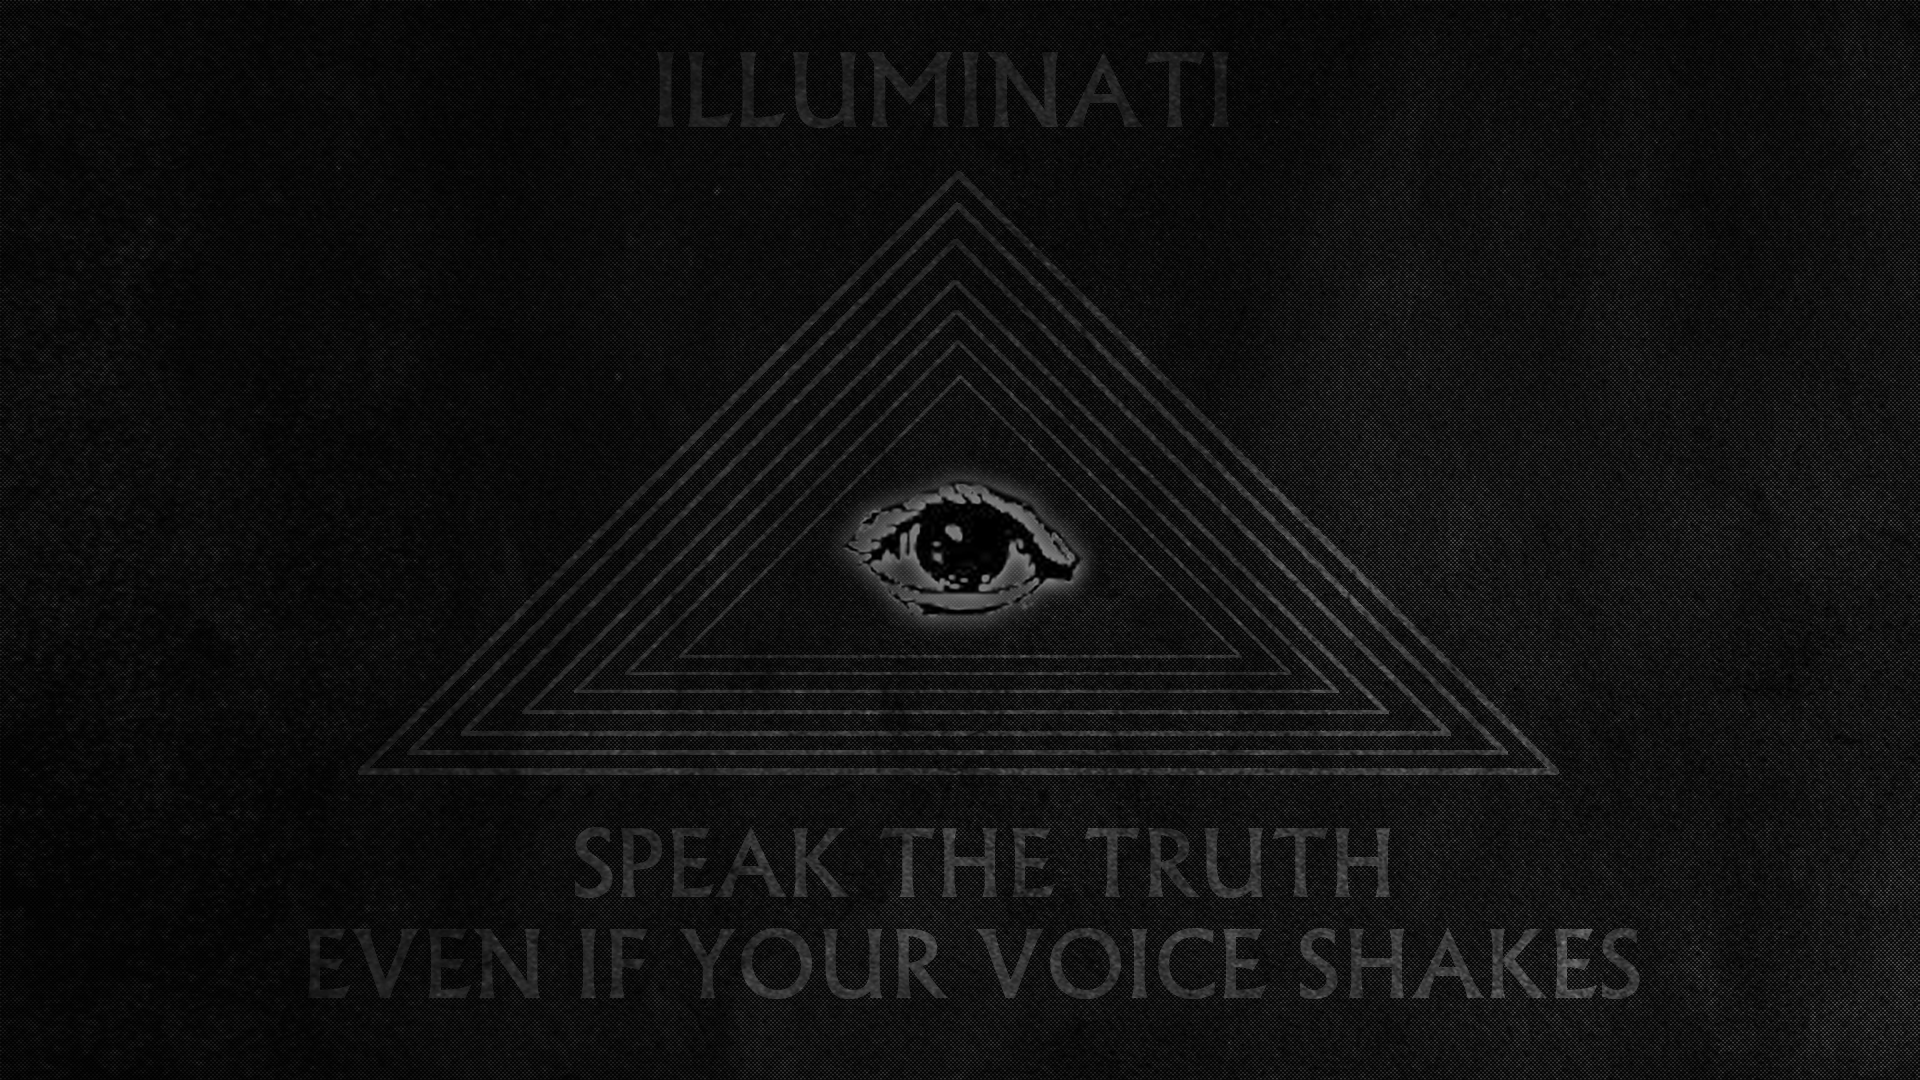 Illuminati HD Wallpaper and Background Image